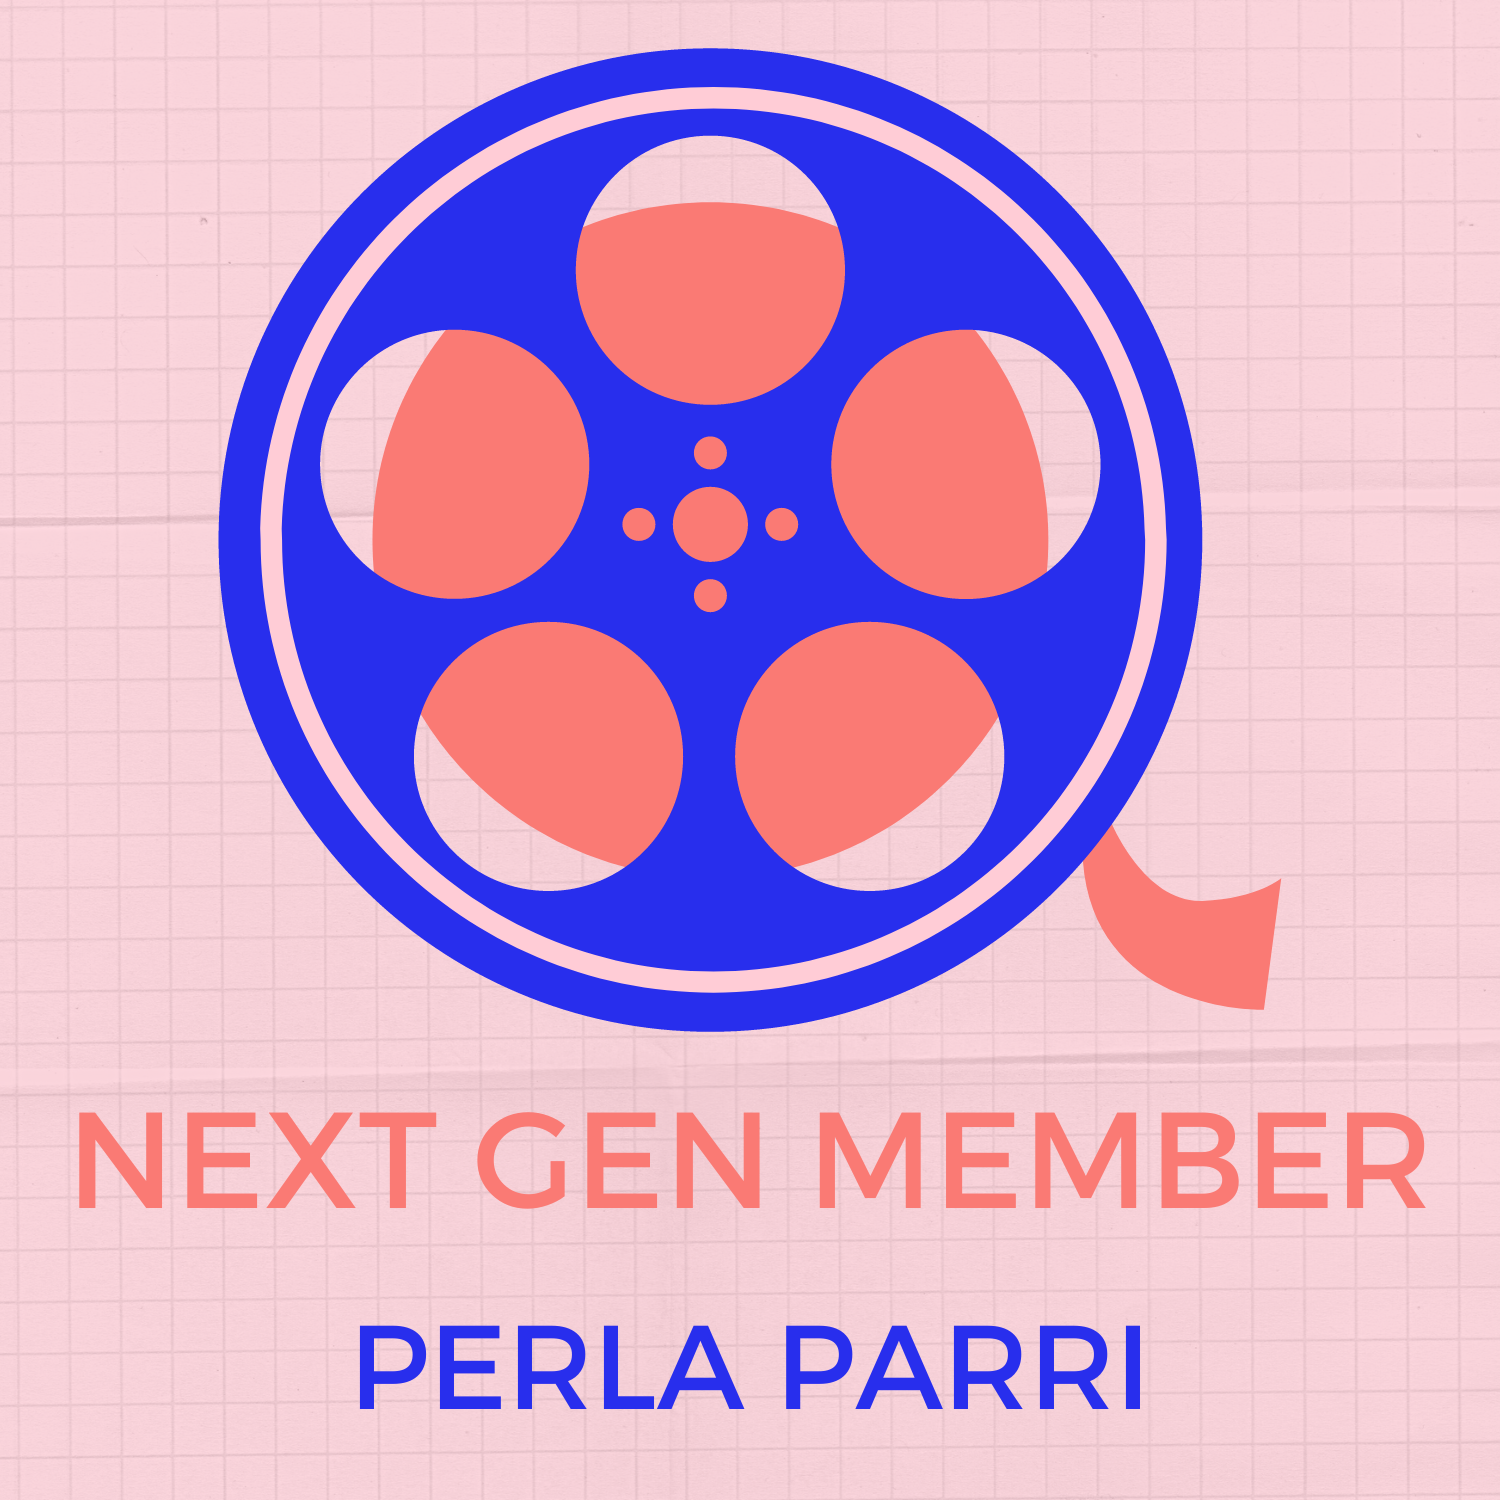 Next Gen Member: Perla Parri